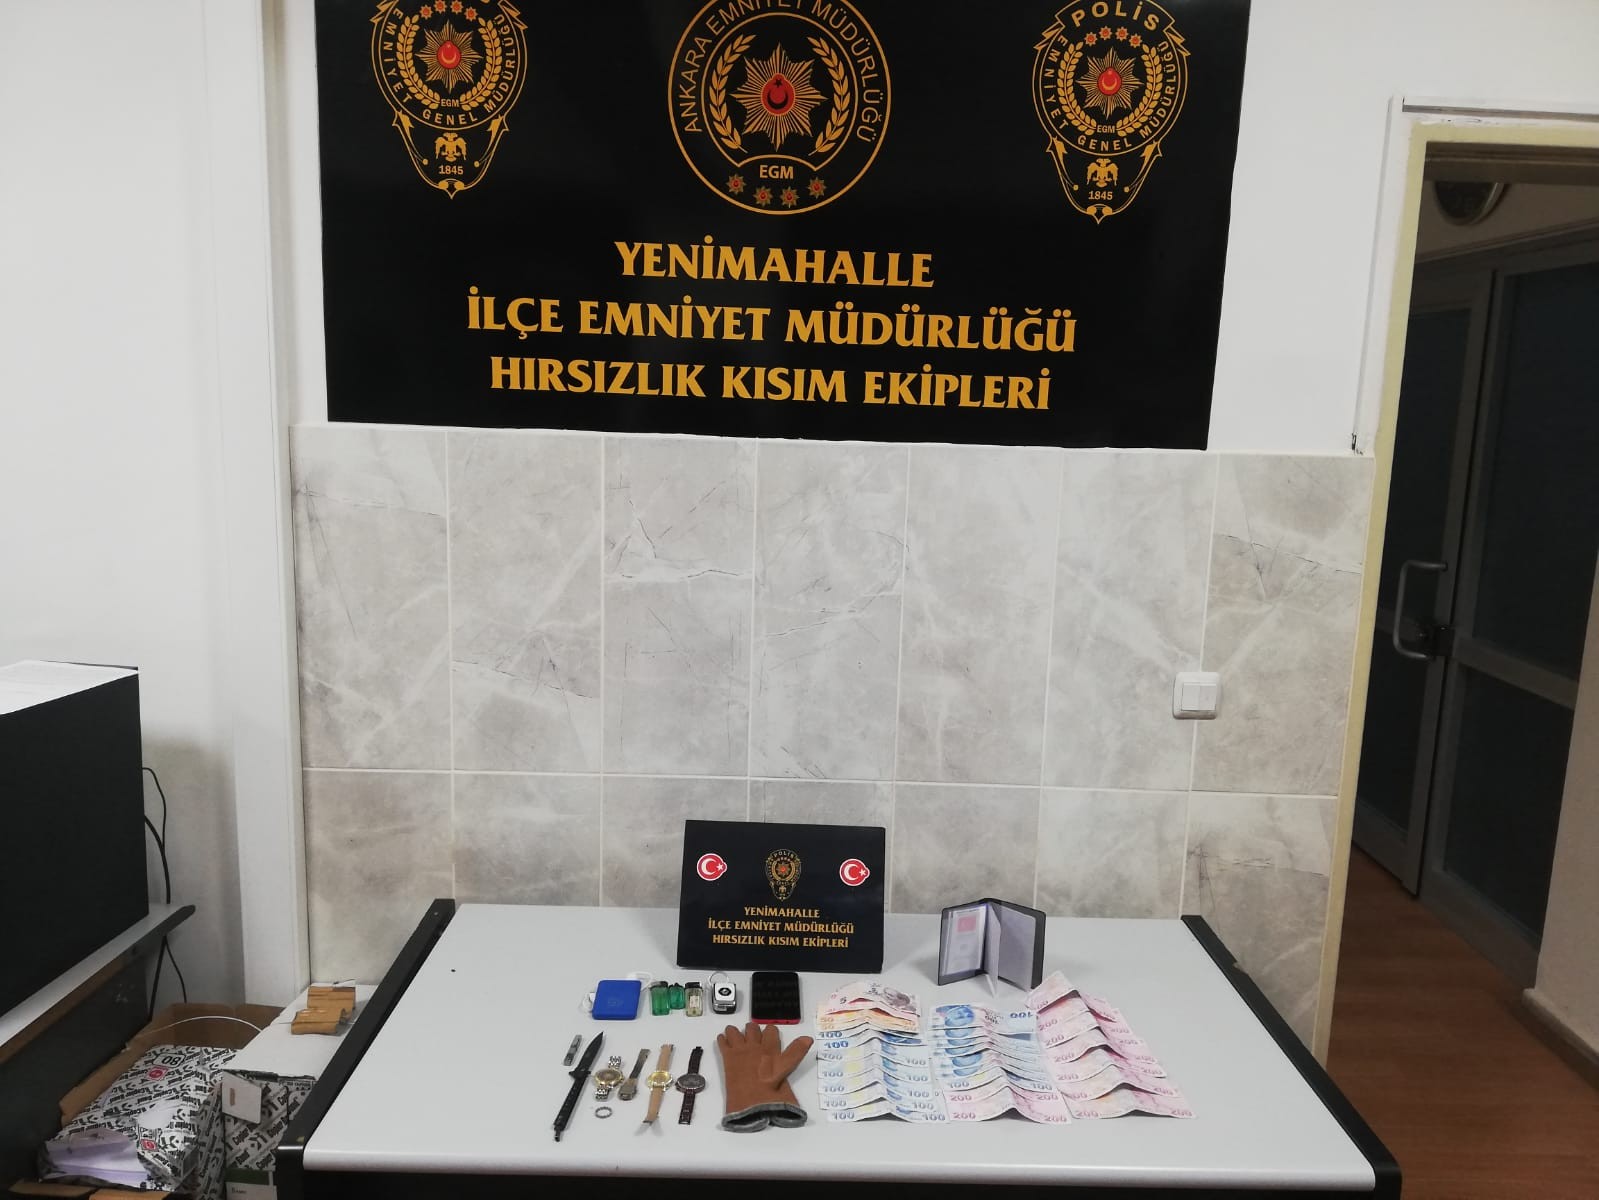 Ankara’da 10 ayrı evden hırsızlık şüphelisi yakalandı #ankara